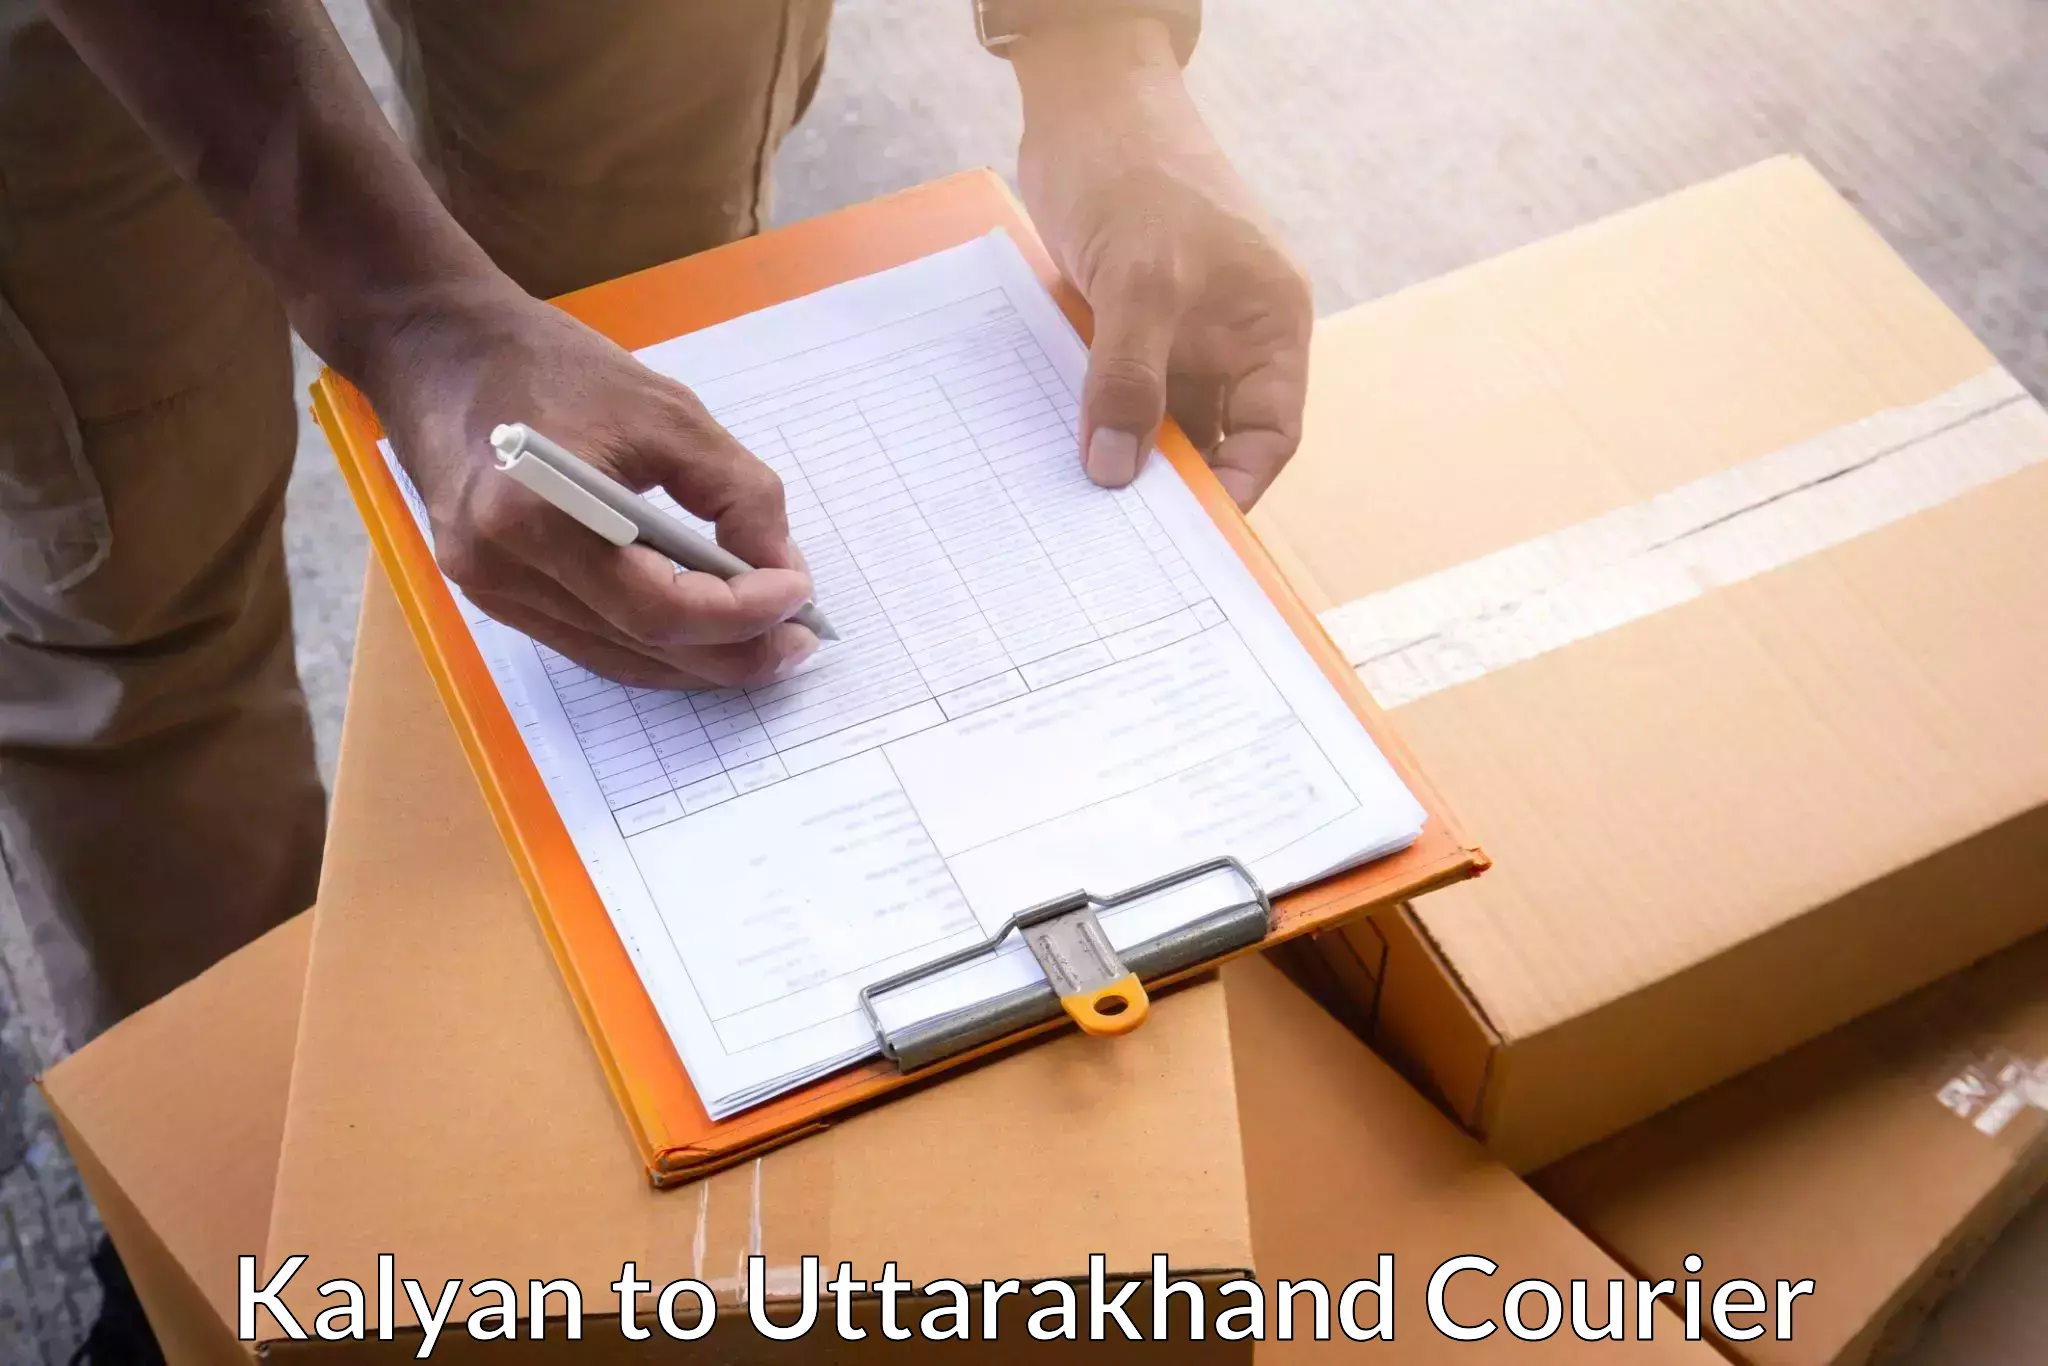 Flexible delivery scheduling Kalyan to Dehradun